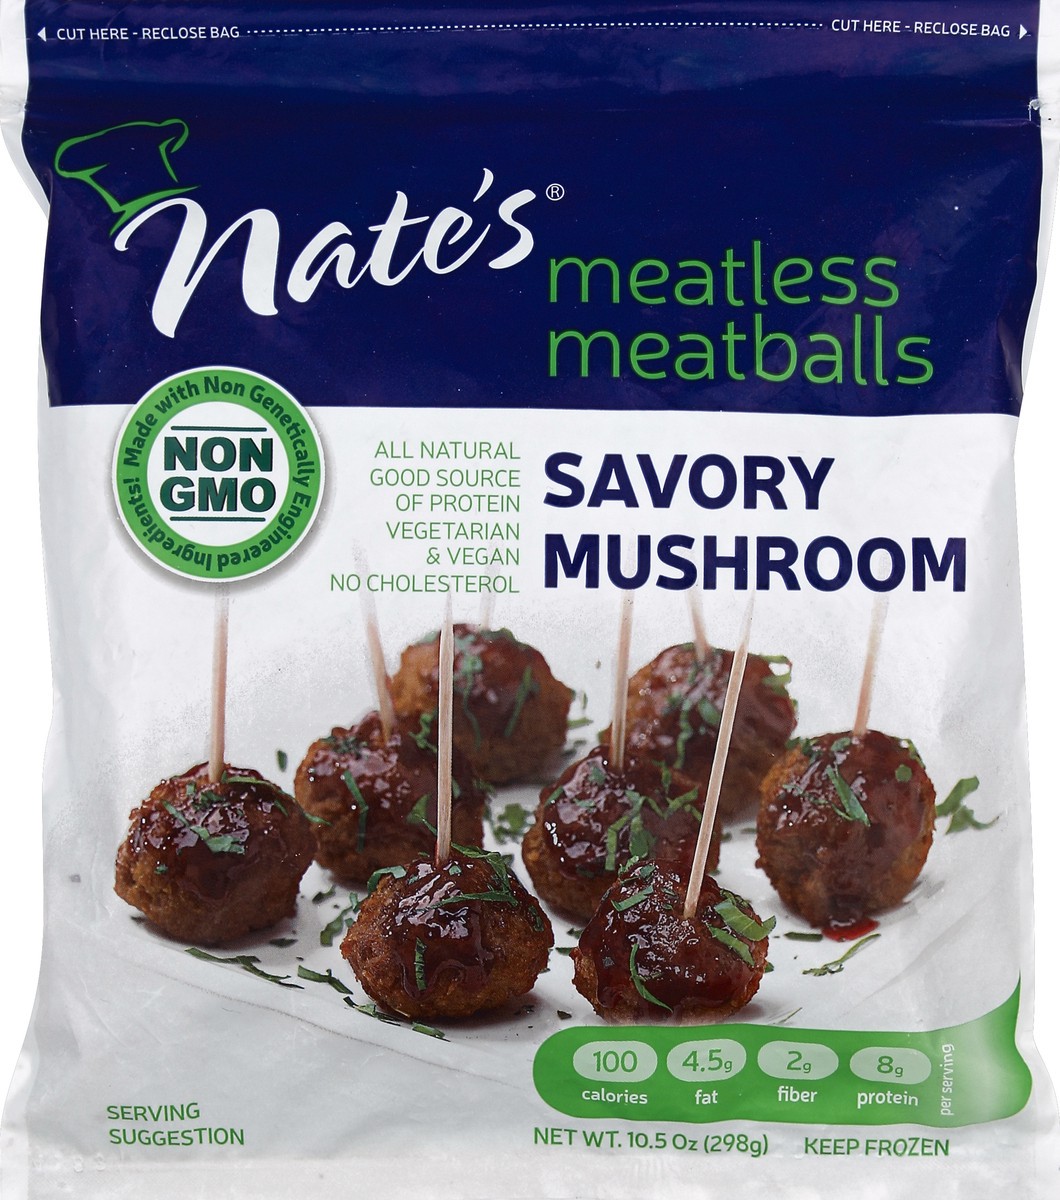 slide 5 of 5, Nate's Meatless Meatballs 10.5 oz, 10.5 oz